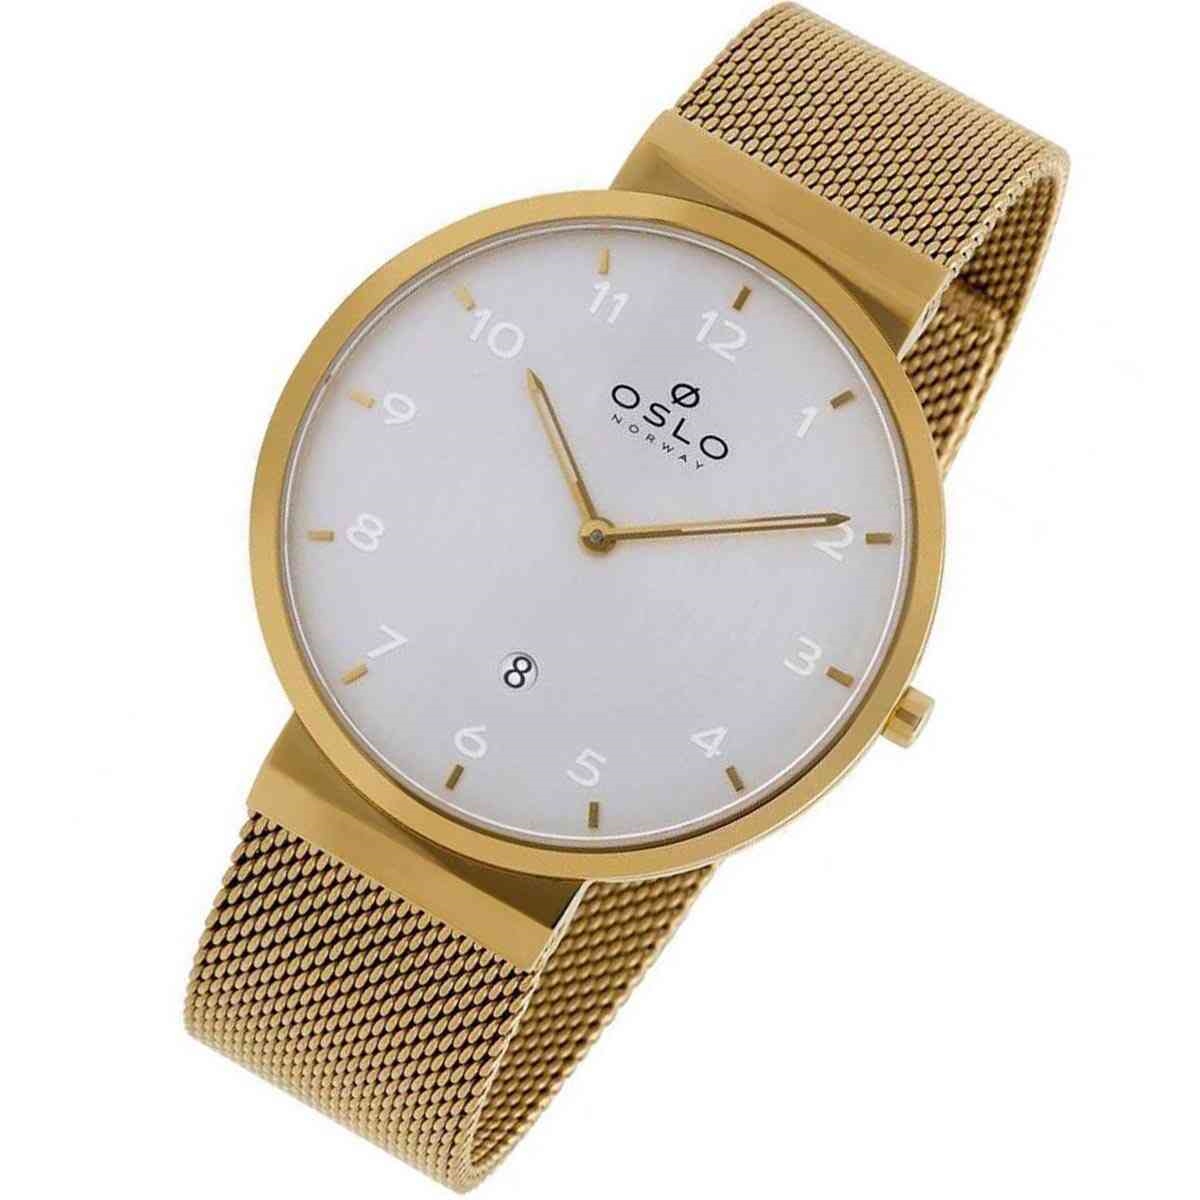 Relógio Oslo Masculino Dourado OMGSSS9U0003